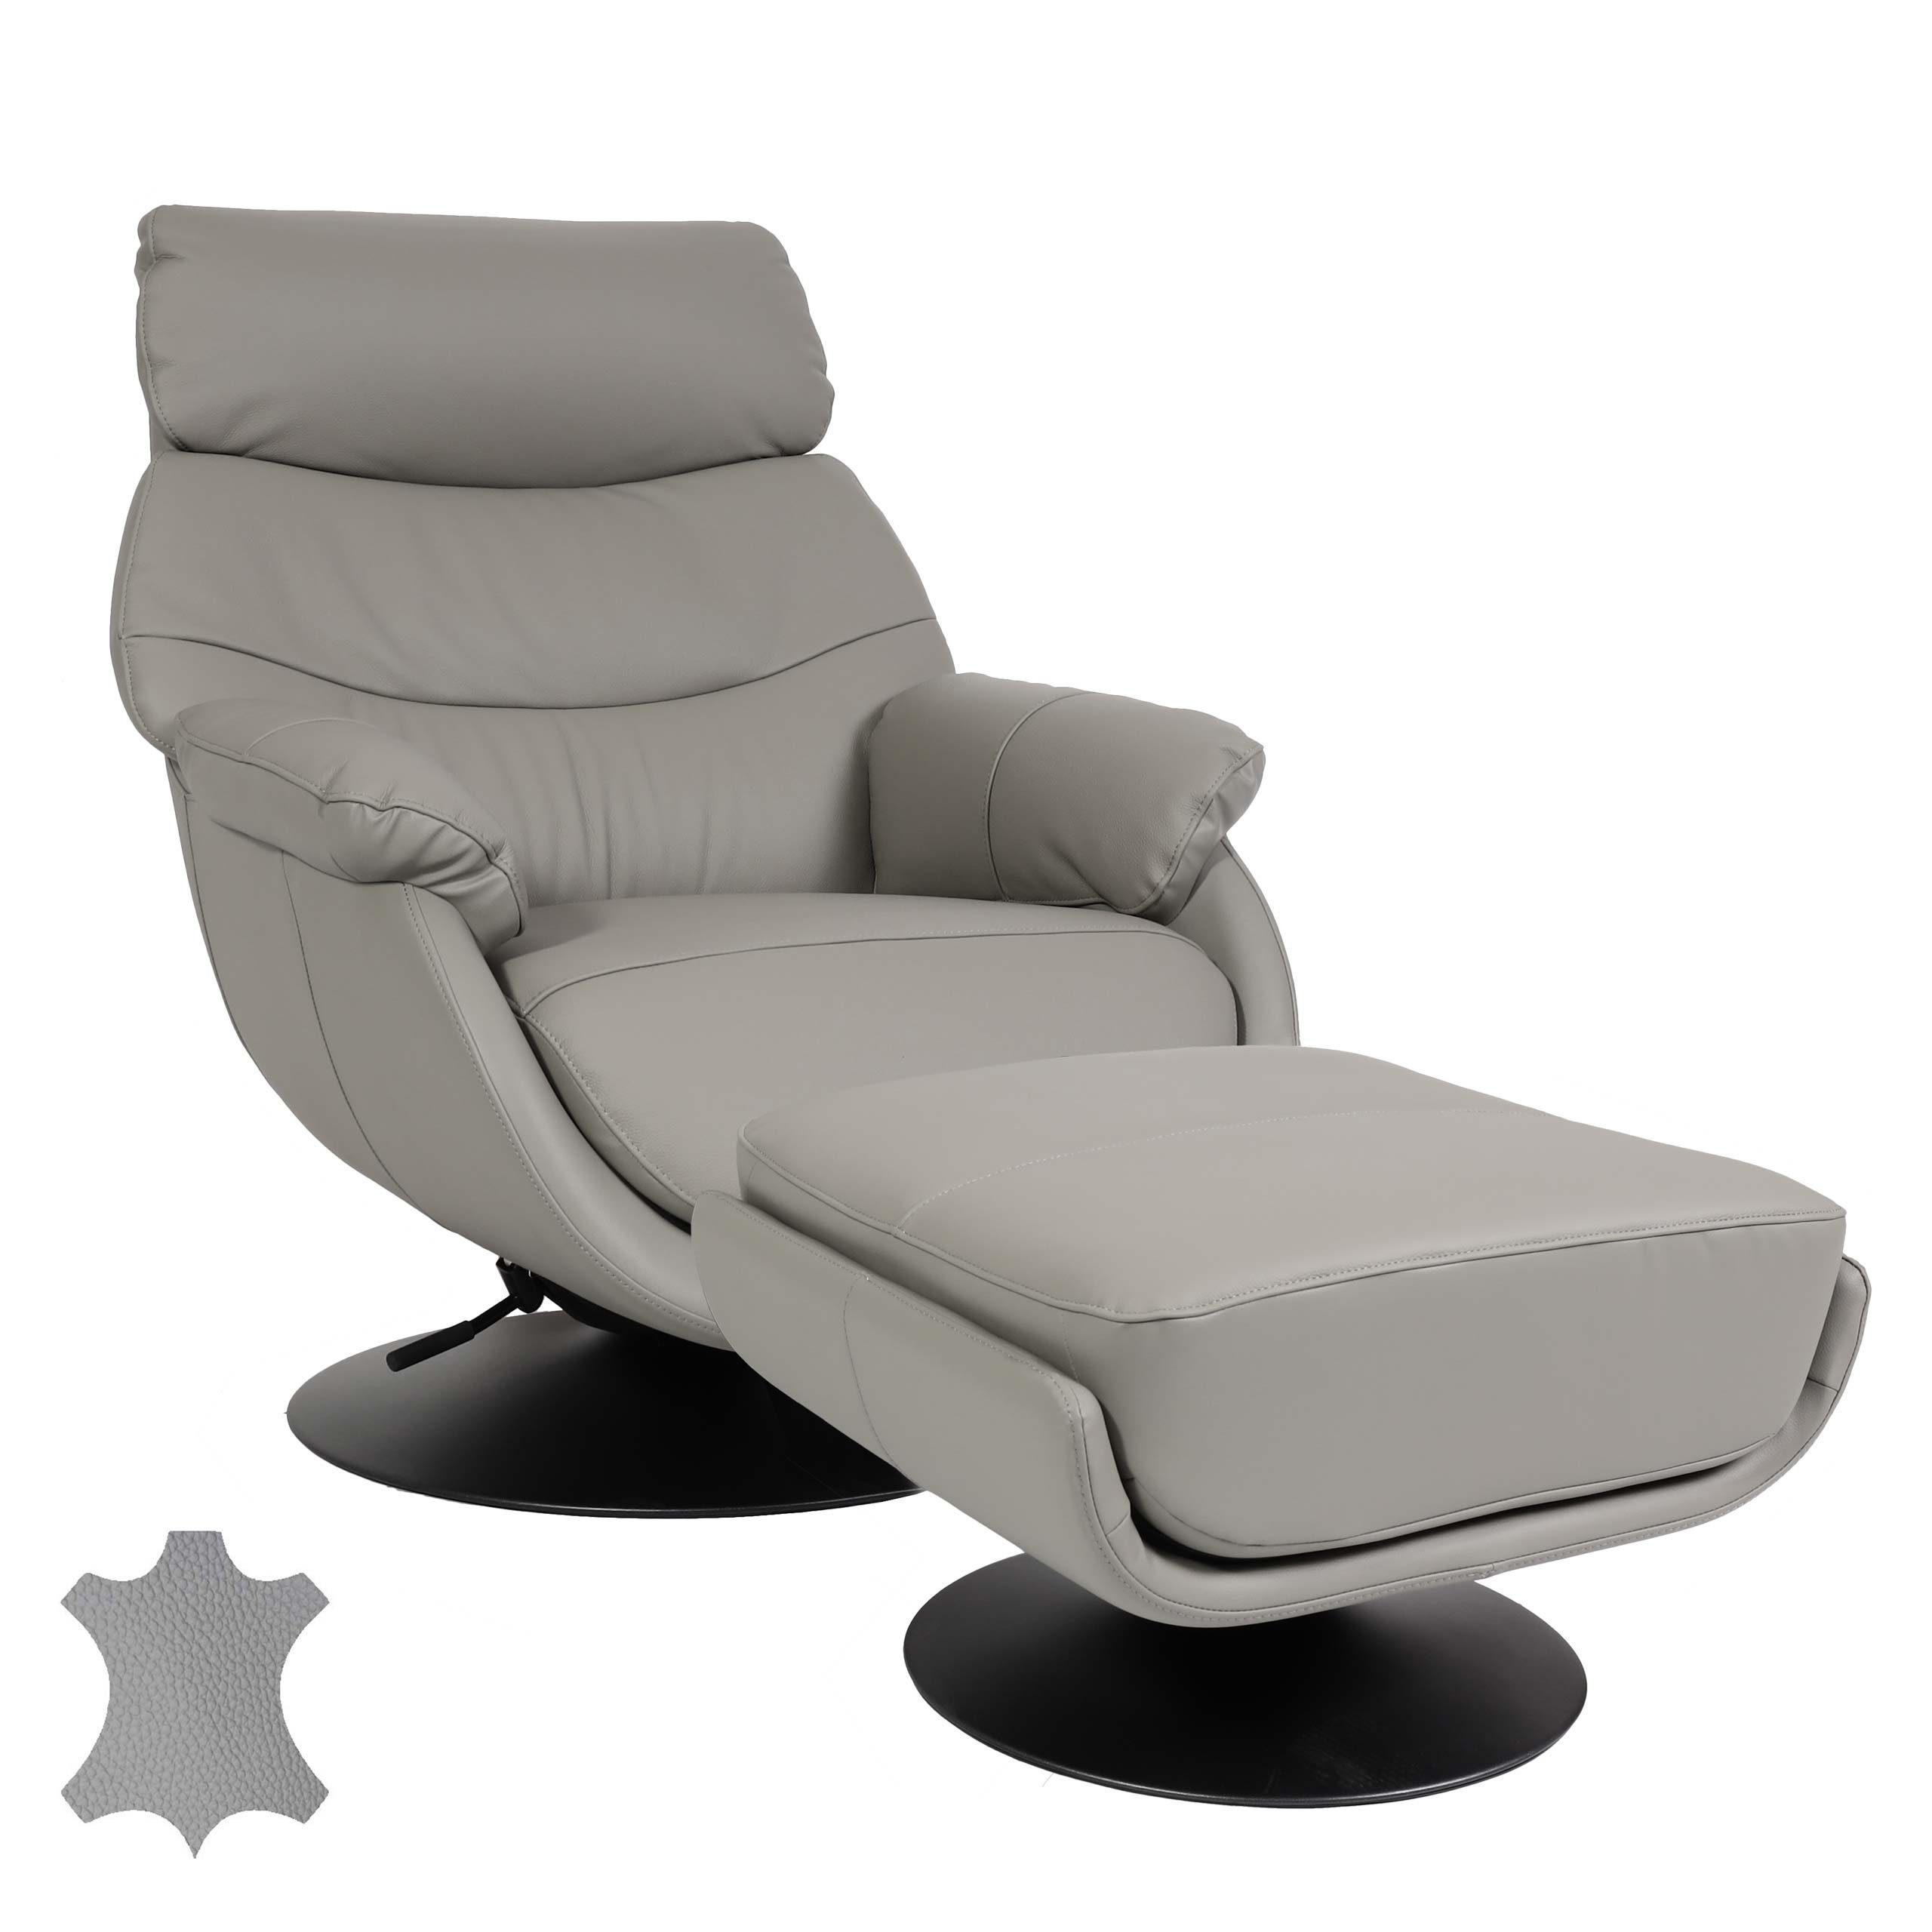 MCW Relaxsessel MCW-K99, | Feststellhebel, Mit grau grau Breite Armlehnen Mit Sitzfläche